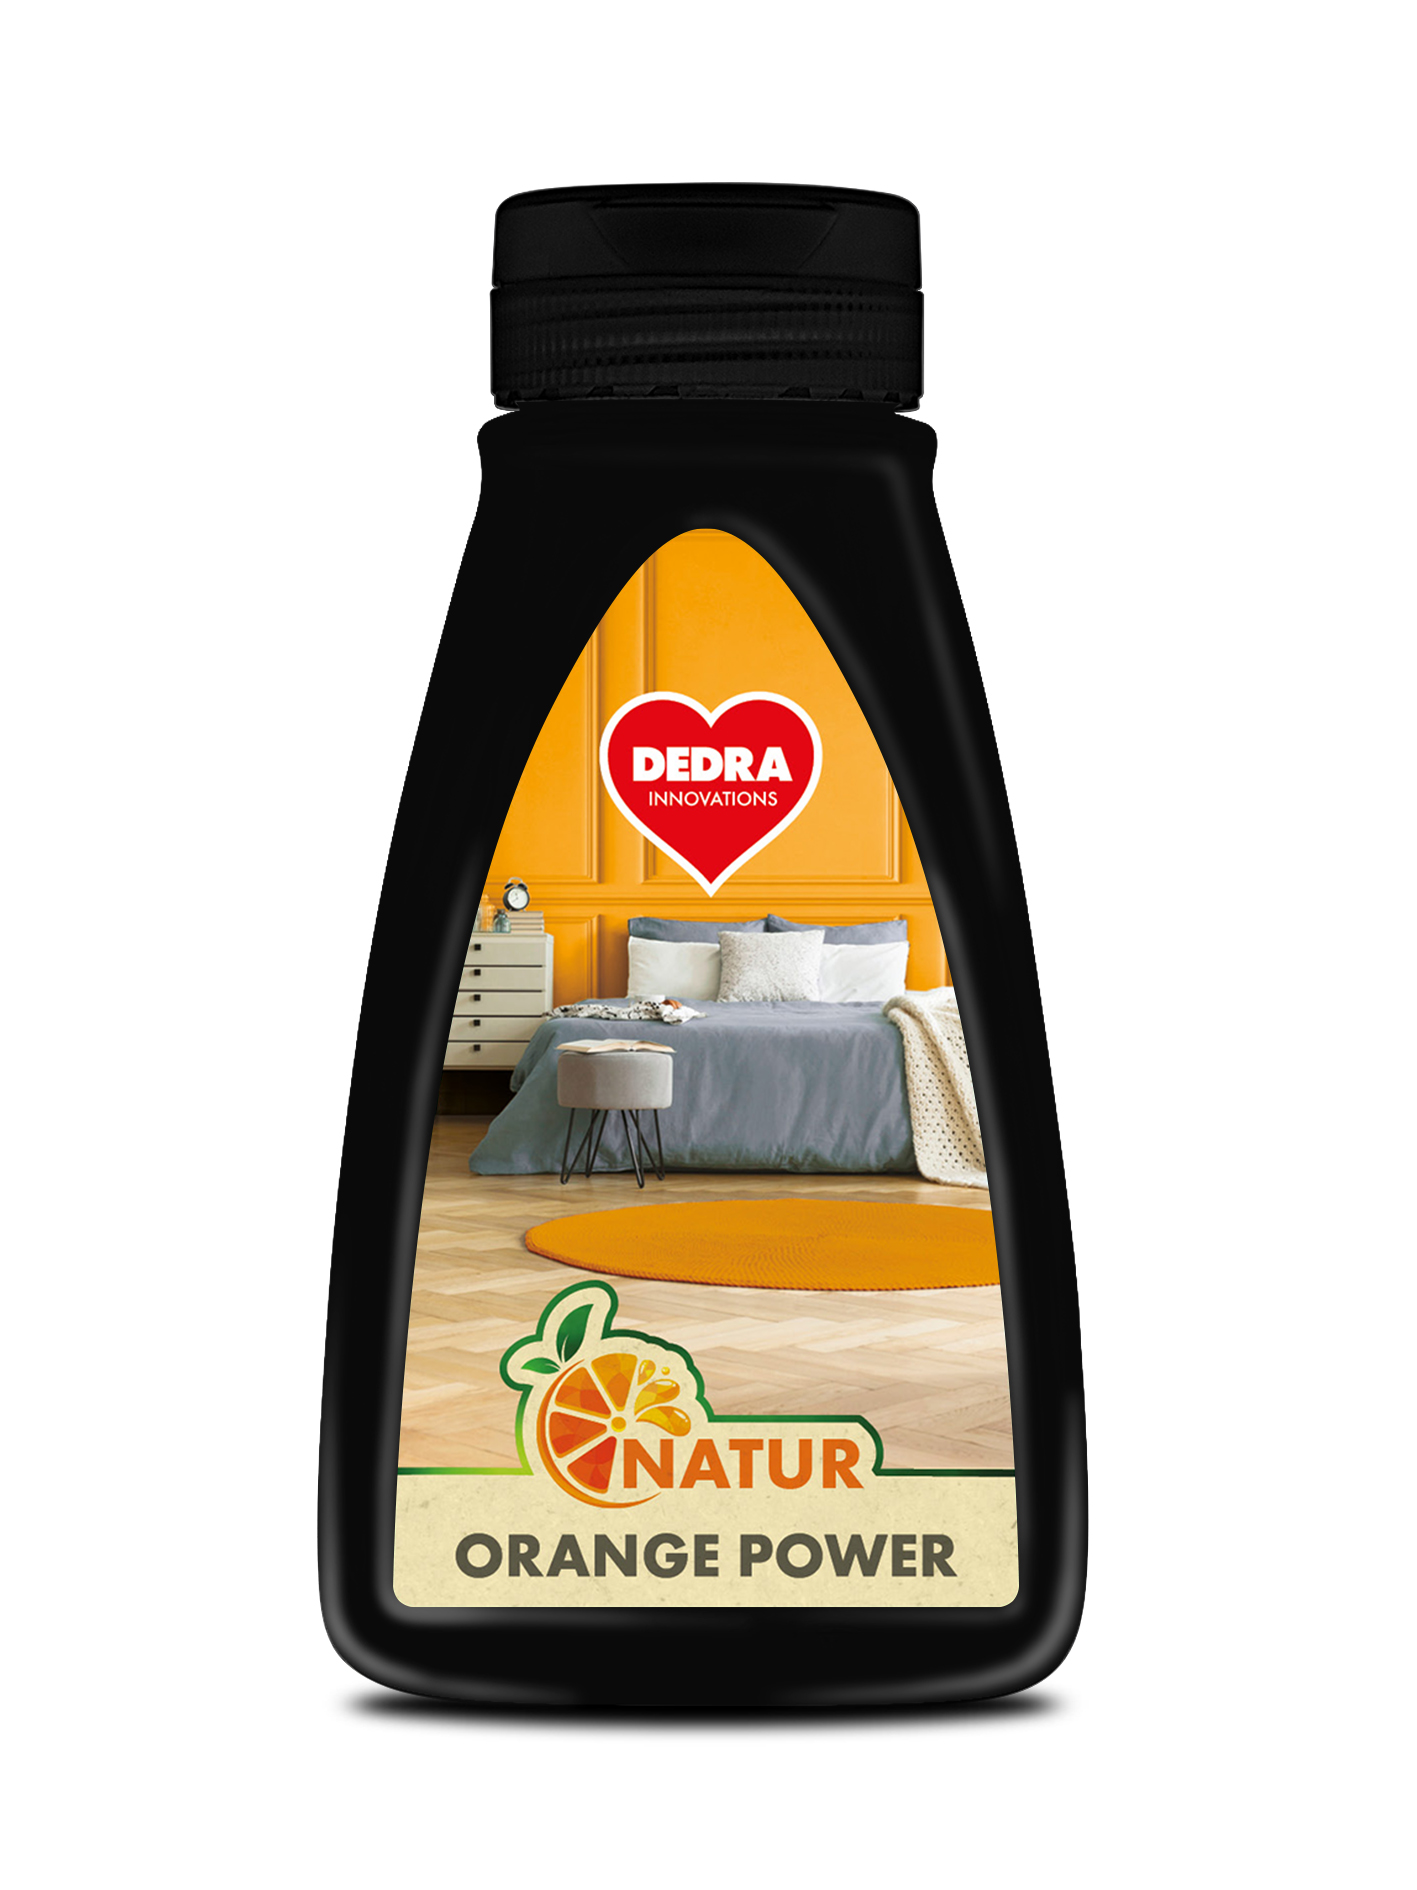 EKO prostriedok s pomarančovým olejom na drevené podlahy, parkety a hladké povrchy NATUR ORANGE POWER